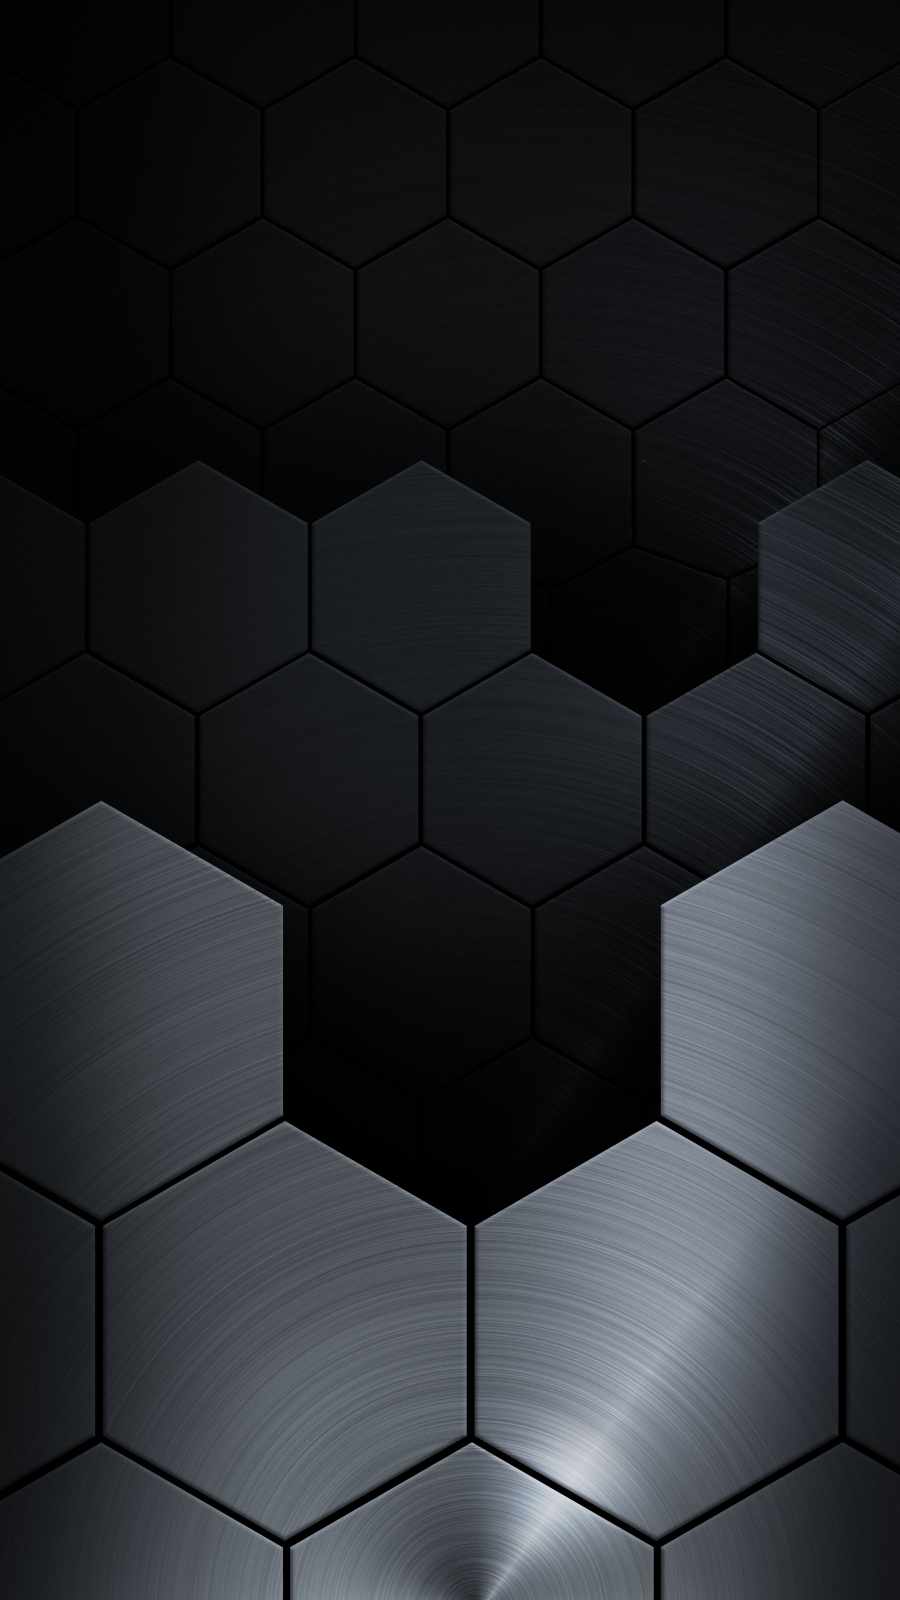 Metal Hexagon IPhone Wallpaper Wallpaper, iPhone Wallpaper